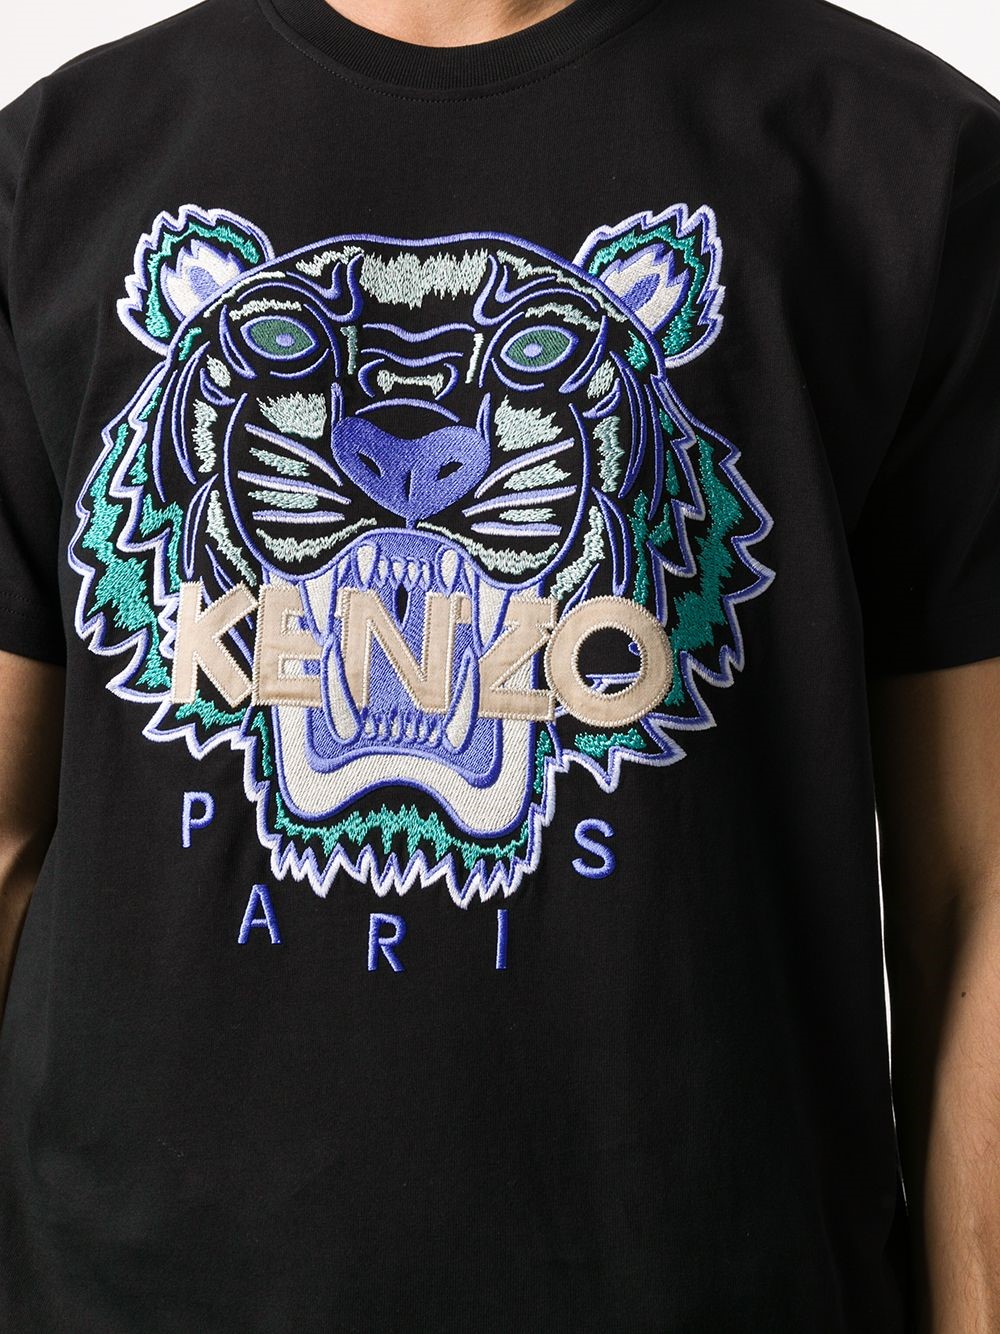 kenzo t shirt xxxl